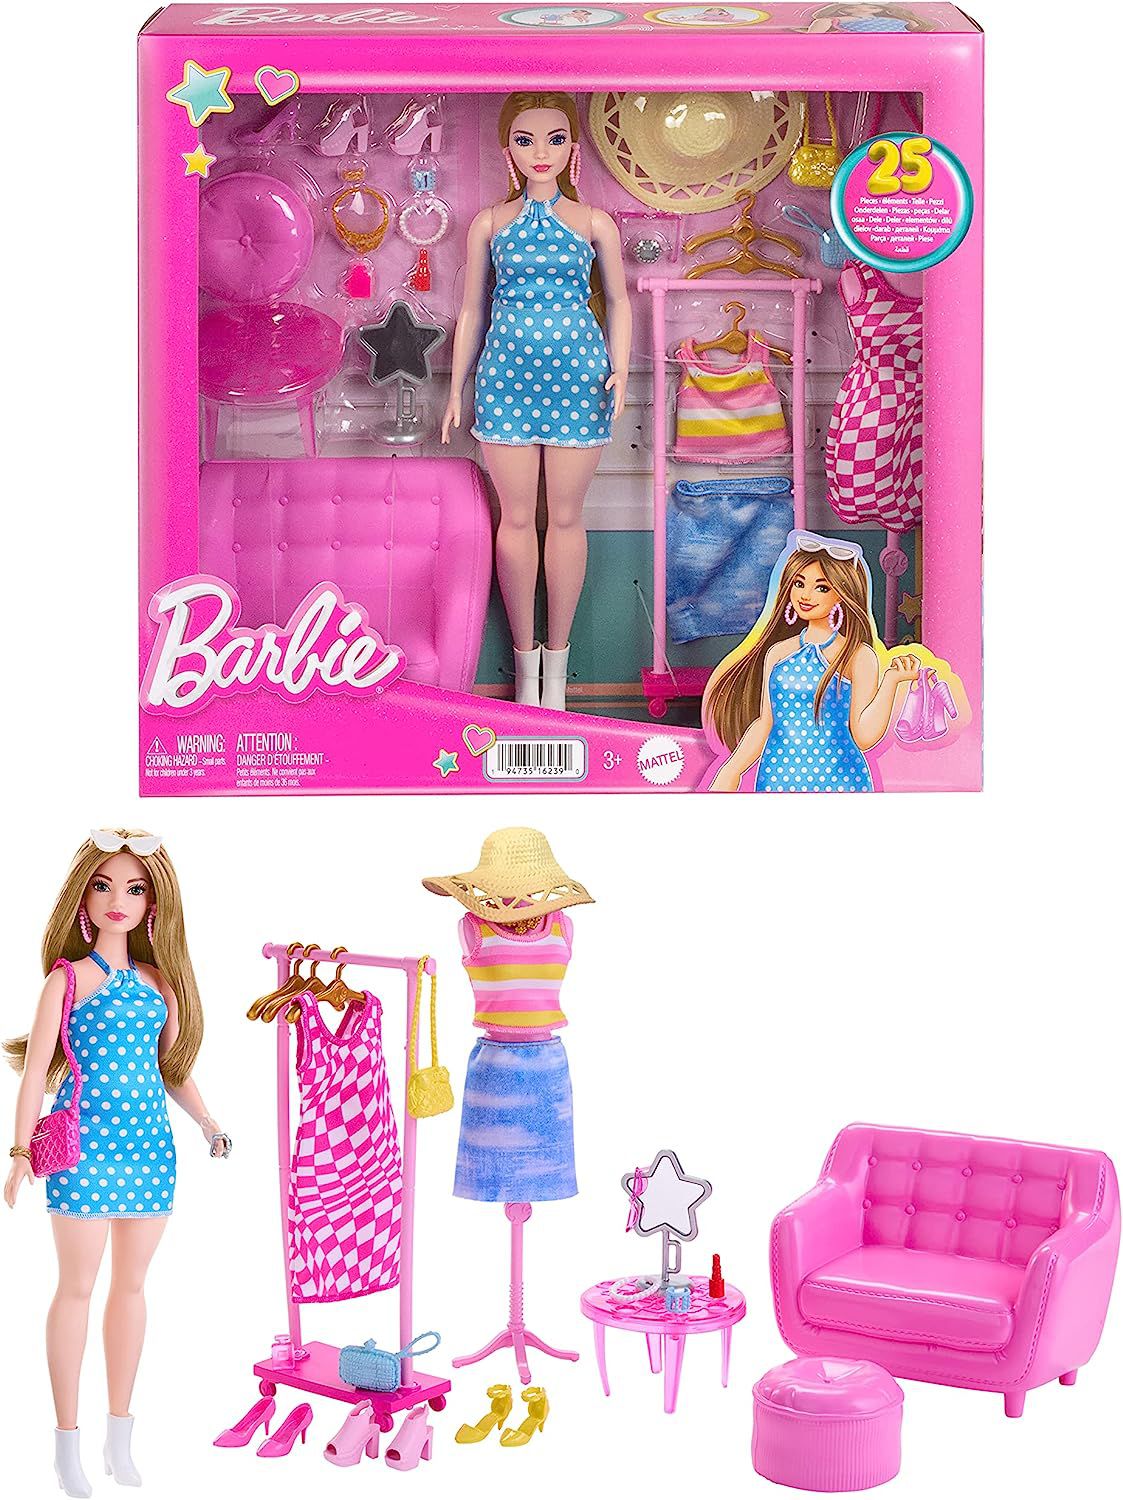 Roupa Roupinha Blusa Minions Para Boneca Barbie Original